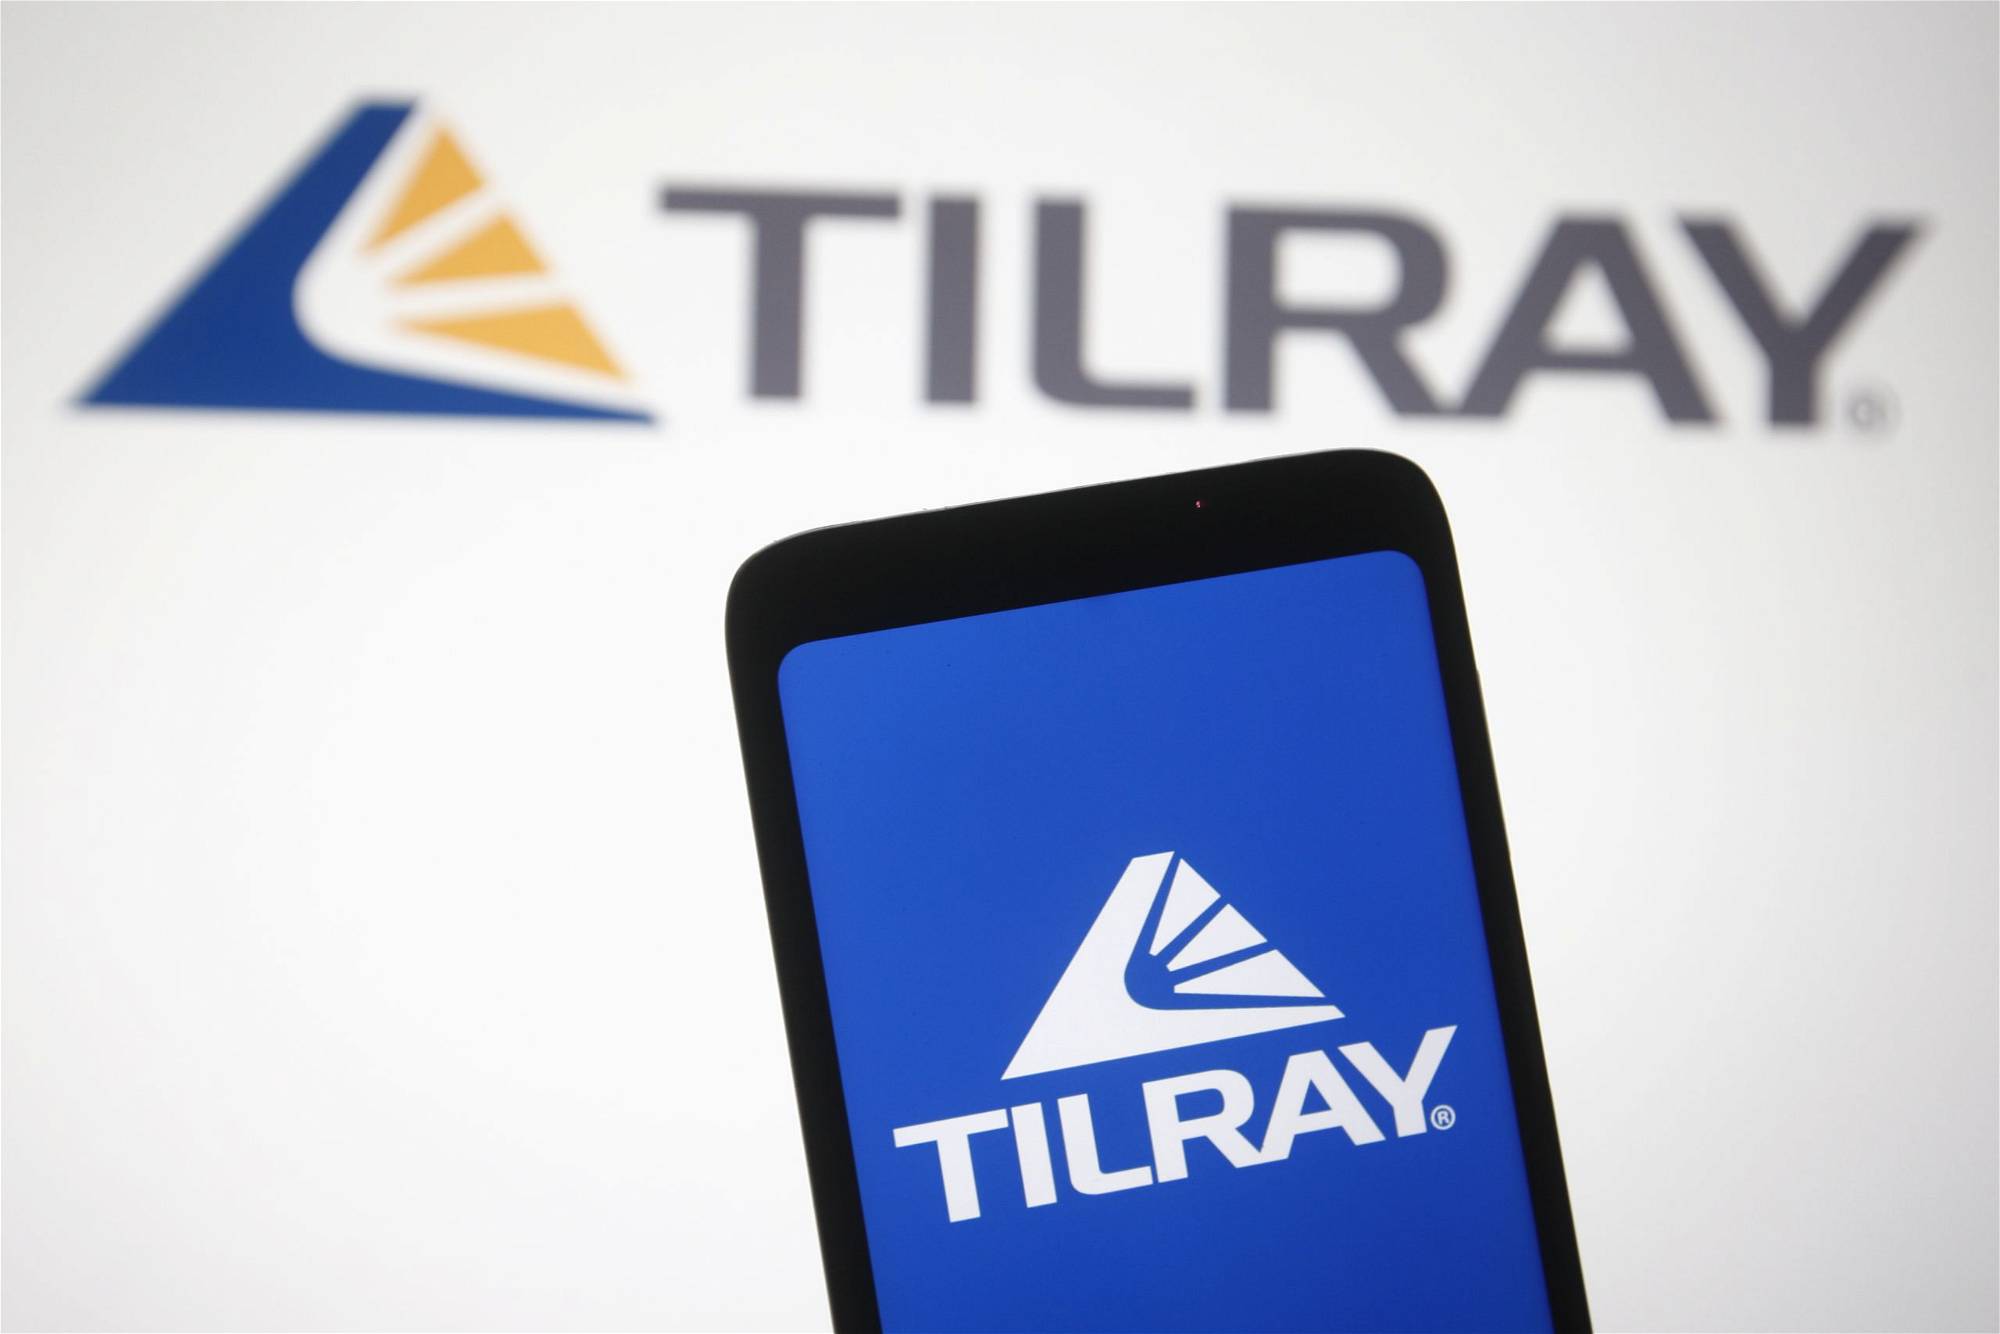 Tilray-Aktie: Sollten Sie jetzt kaufen?